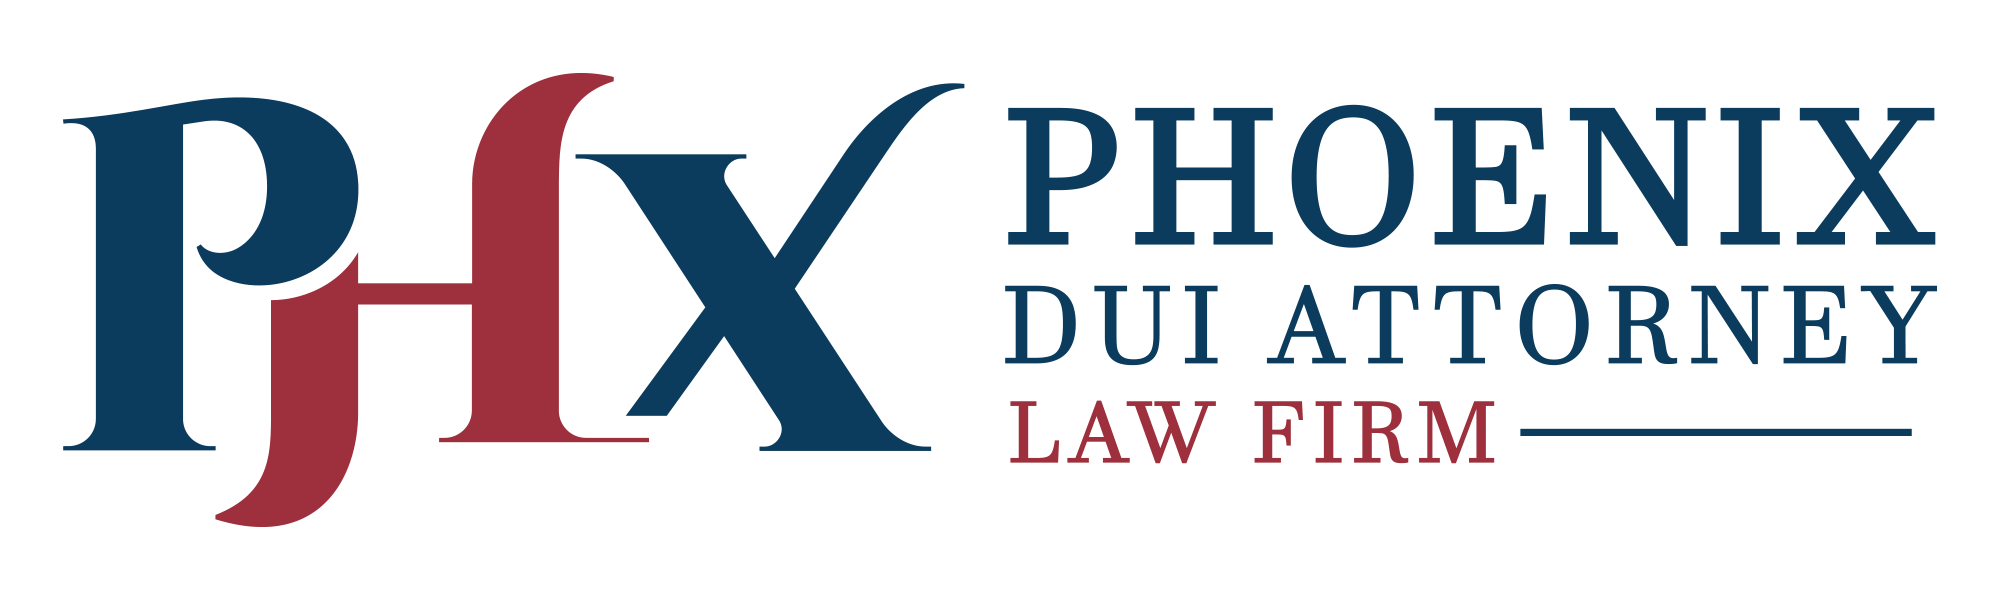 DUI Logo - Phoenix DUI Attorney Lawyer. Phoenix DUI Attorney